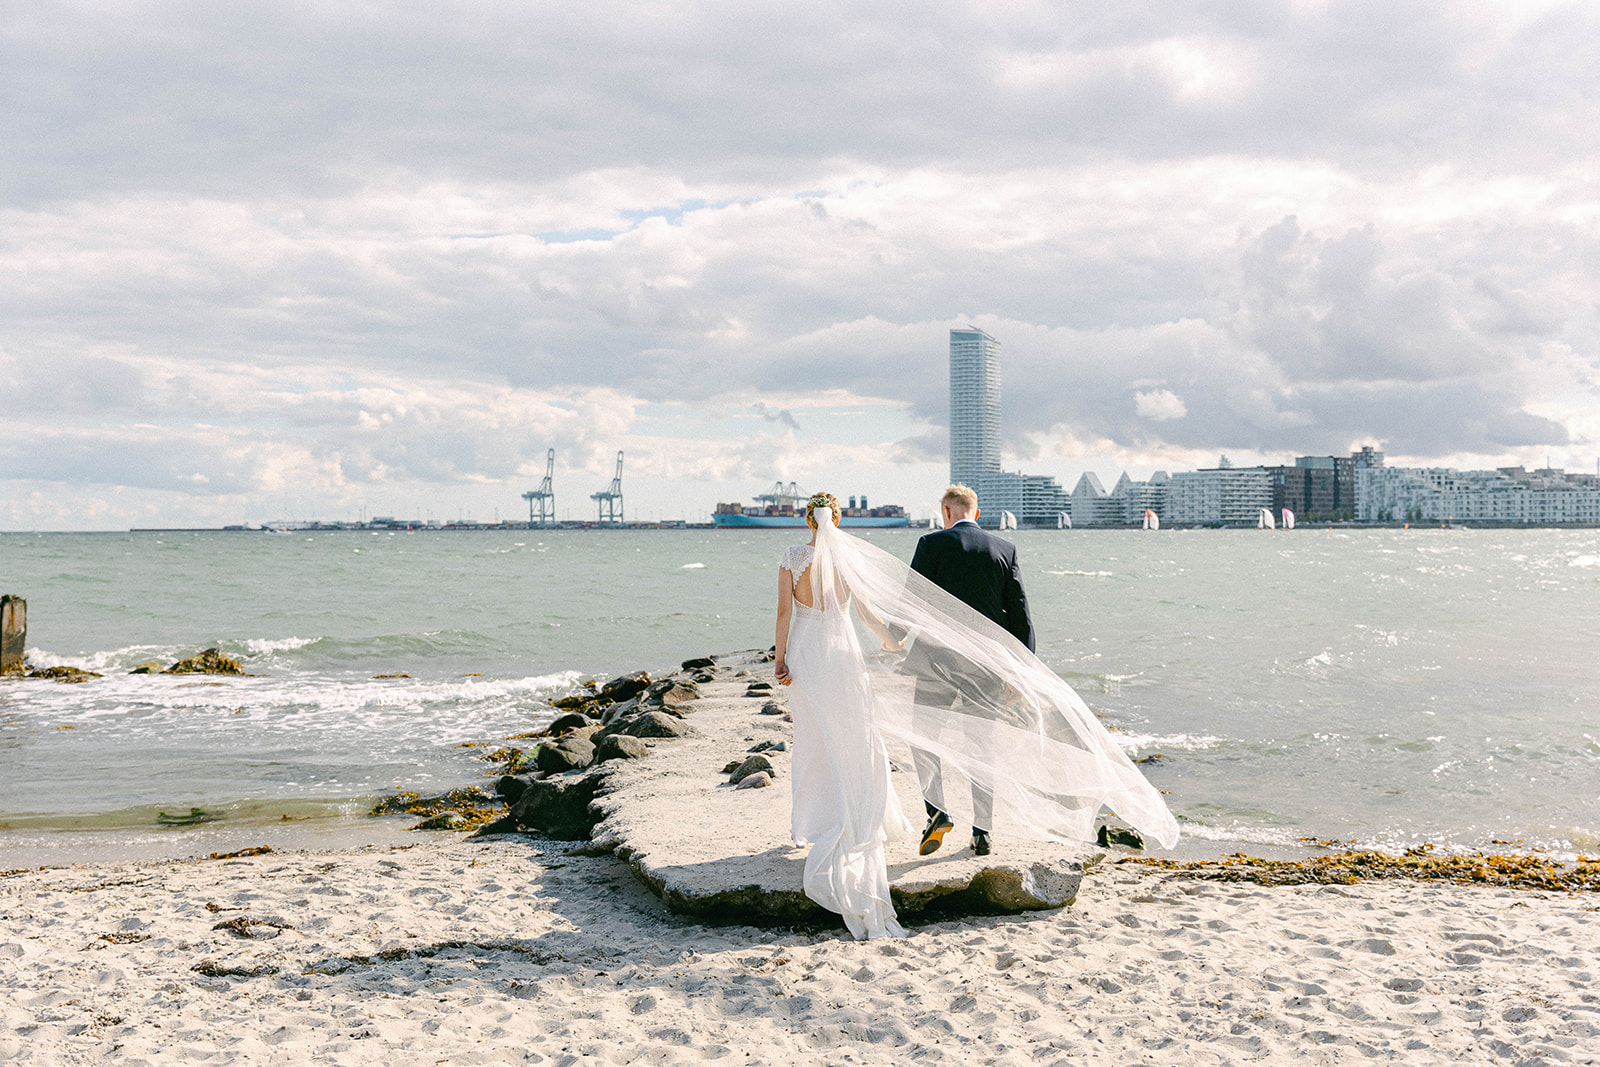 Stunning Aarhus beach wedding photo featuring happy couple